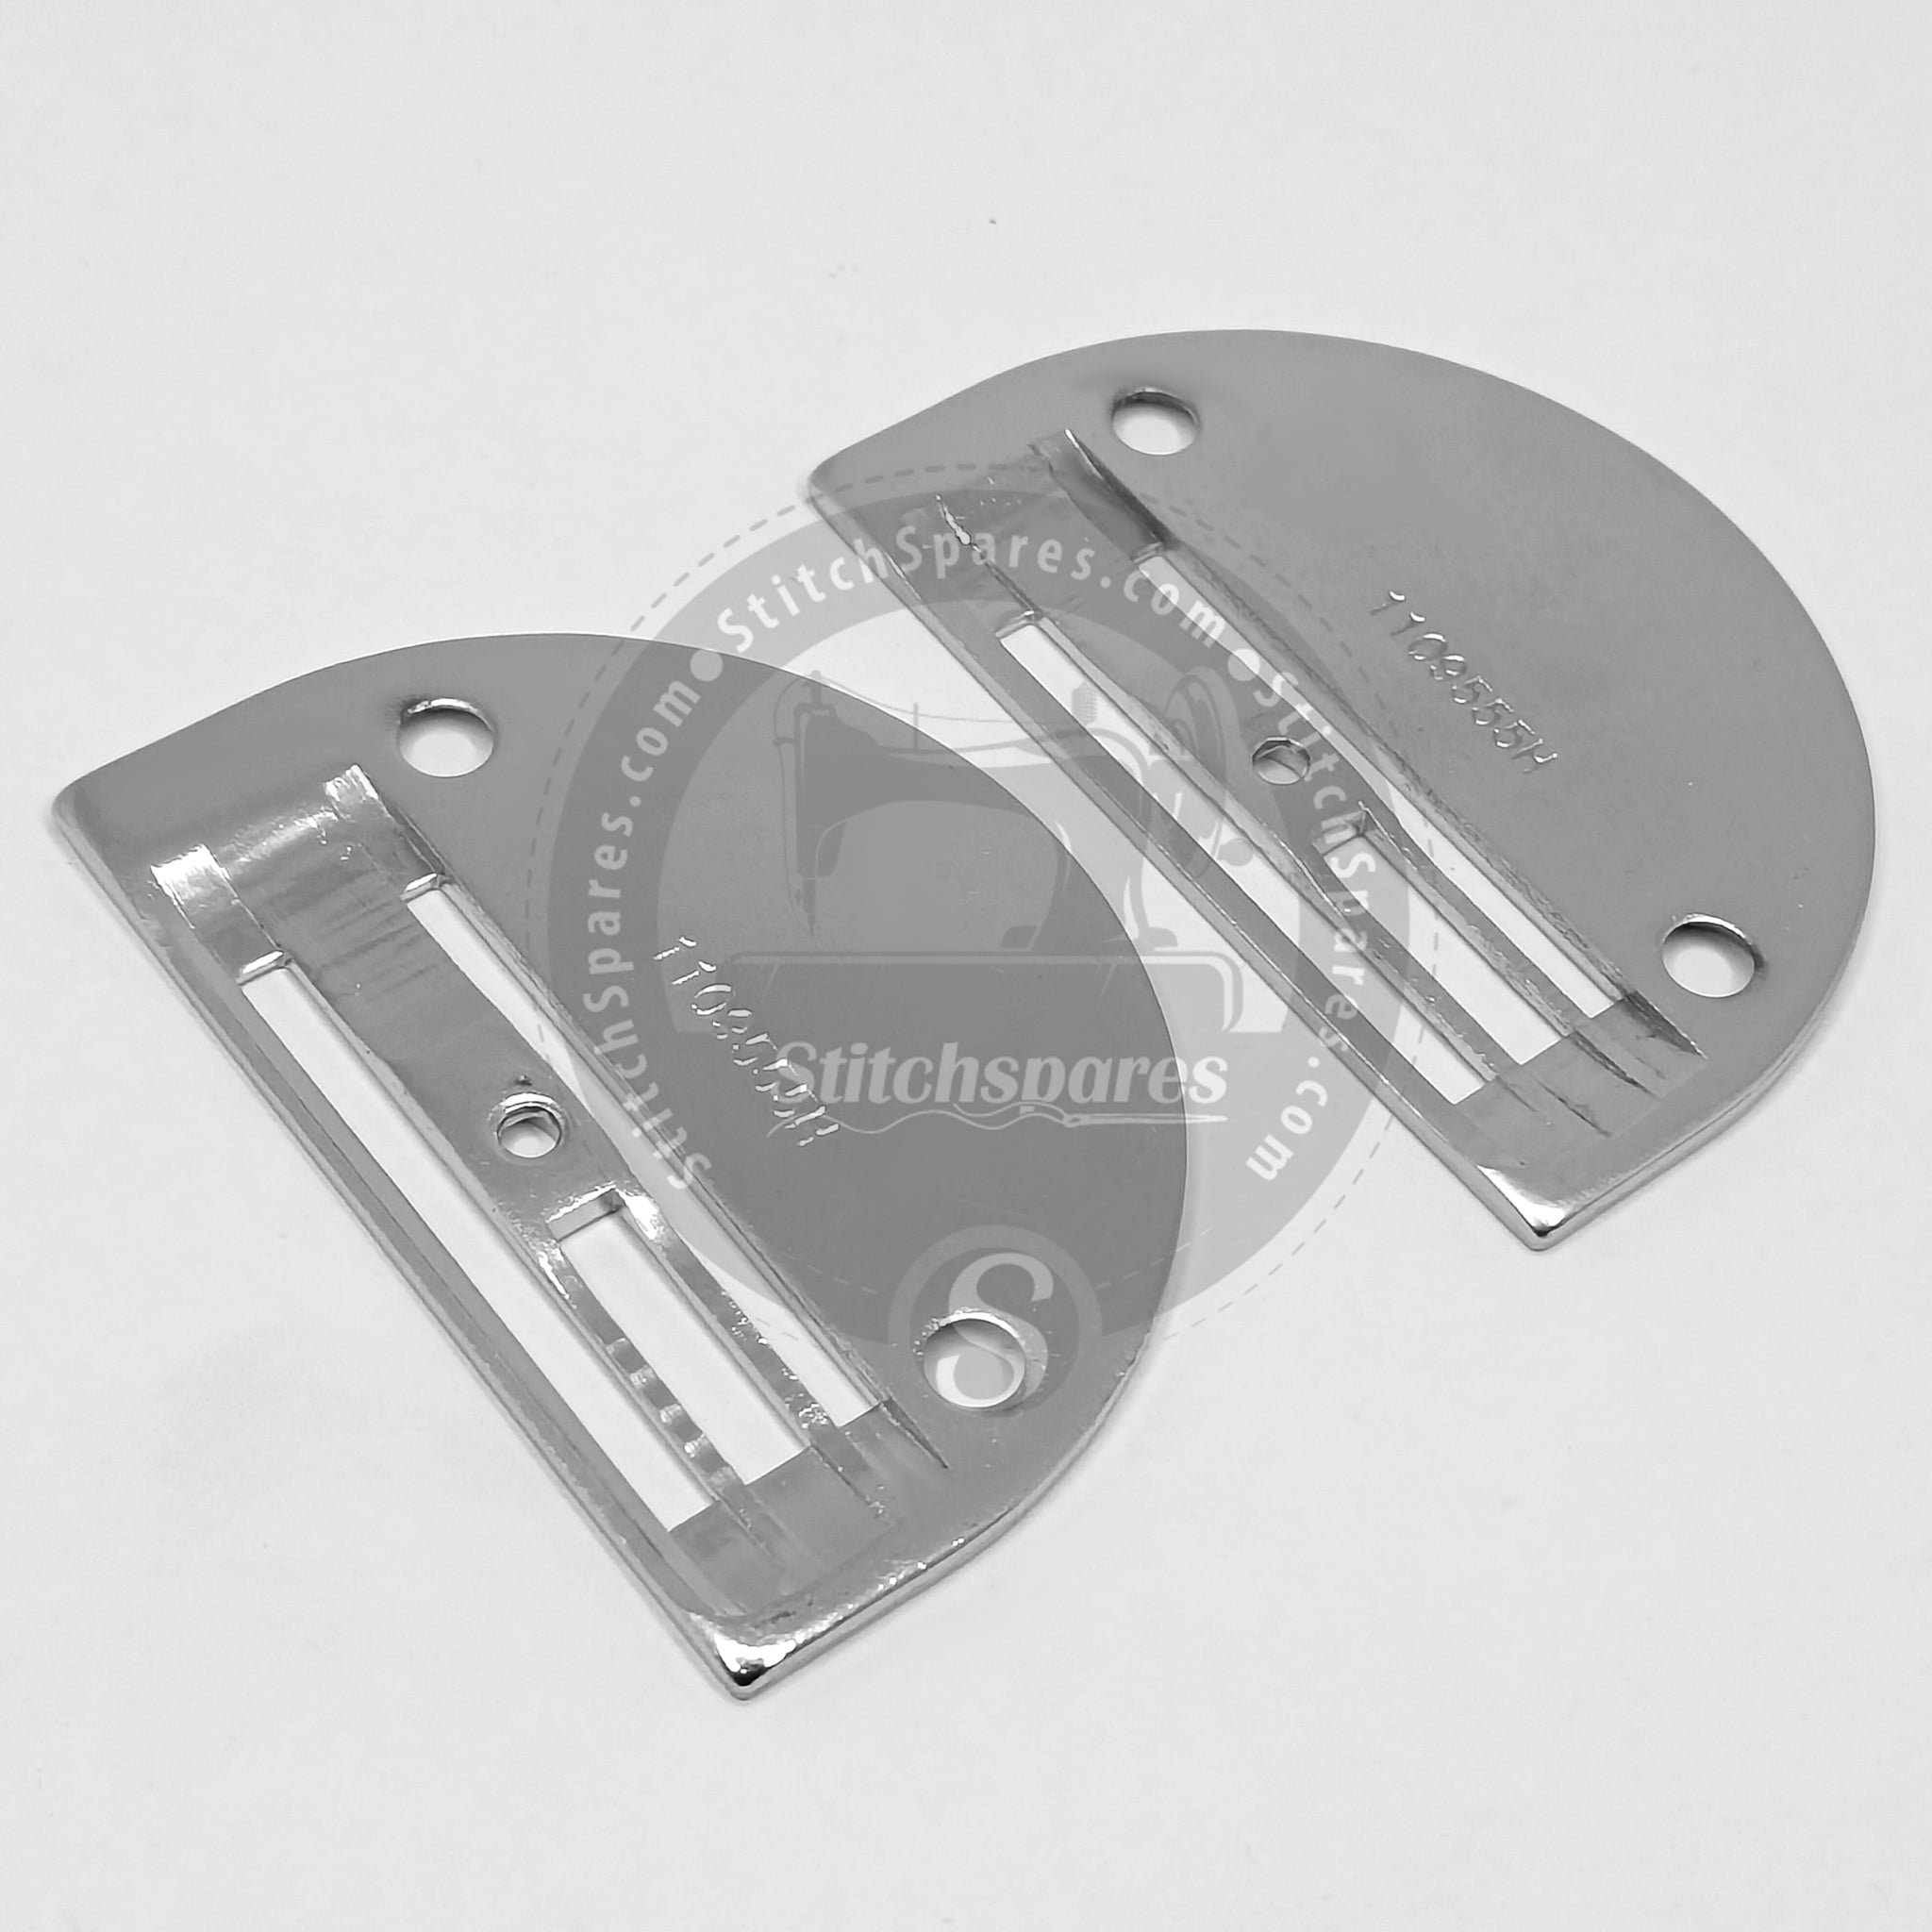 # B1109-555-H0B / # B1109555H0B Placa de cuello (H) para piezas de repuesto para máquinas de coser industriales JUKI DDL-8100, DDL-8300, DDL-8500, DDL-8700